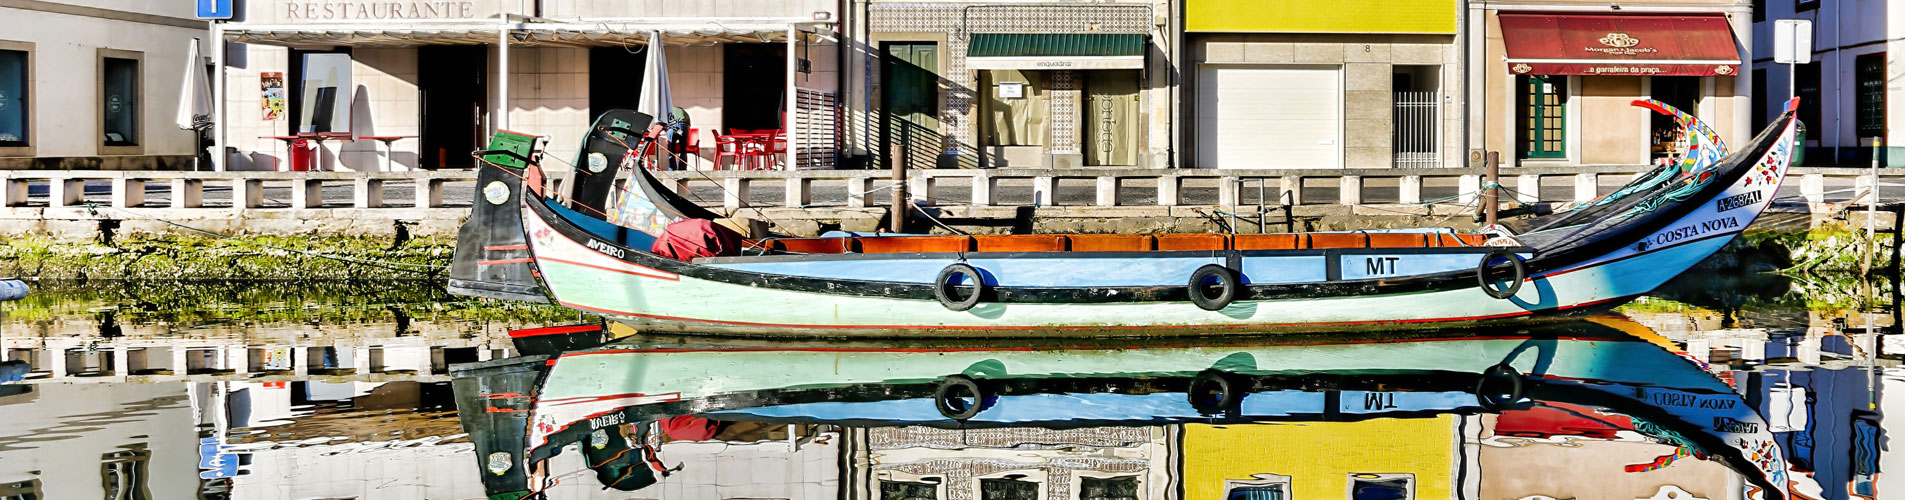 Moliceirois Boats Aveiro